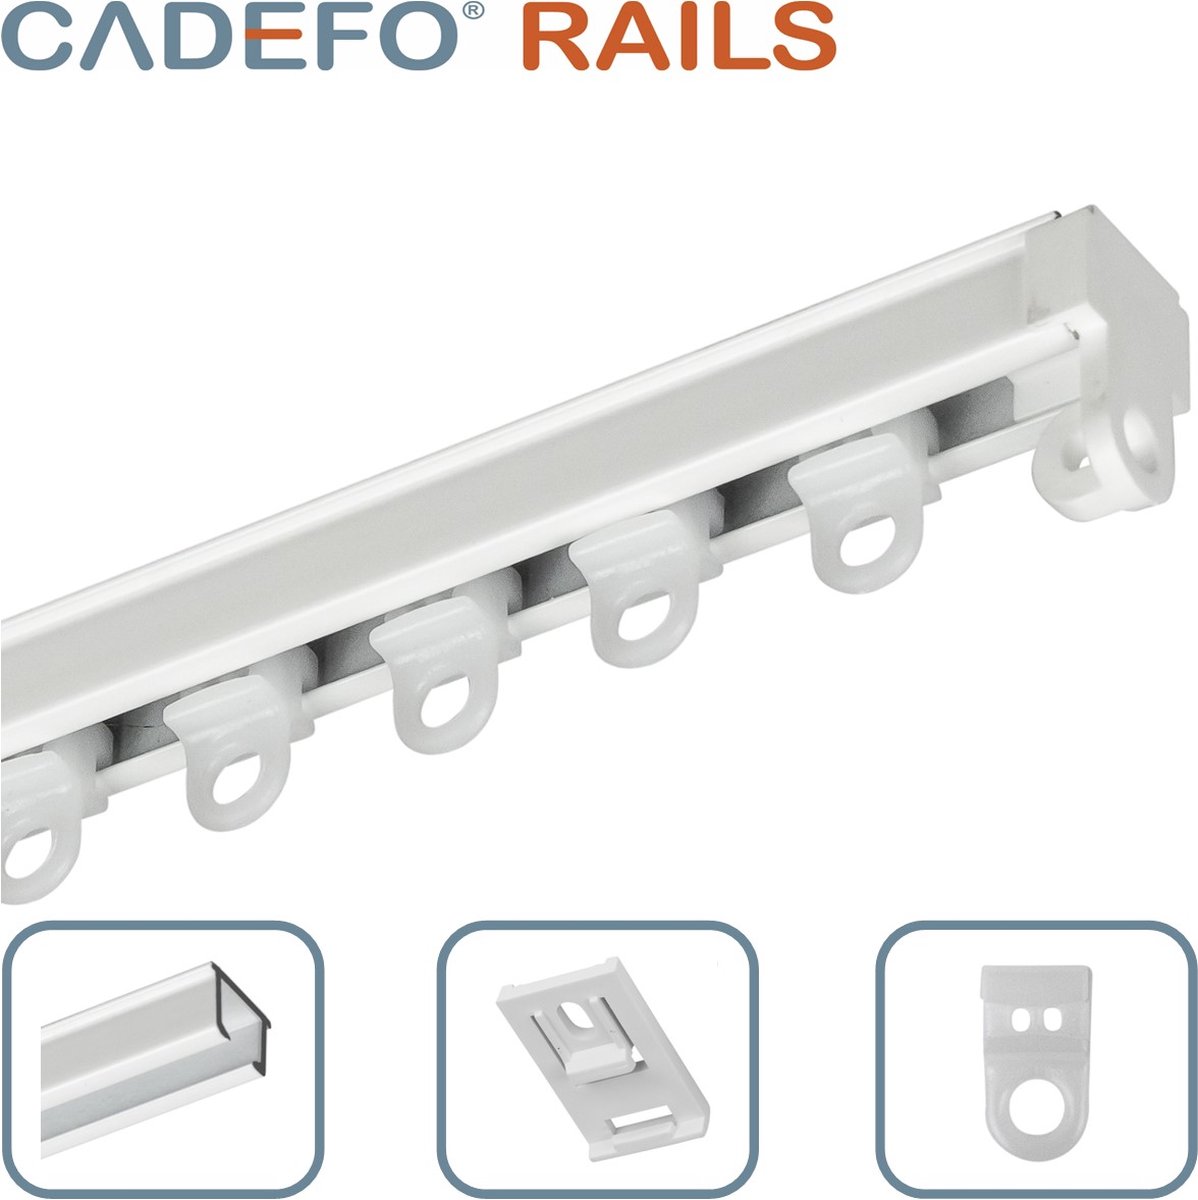 CADEFO RAILS (501 - 550 cm) Gordijnrails - Compleet op maat! - UIT 1 STUK - Leverbaar tot 6 meter - Plafondbevestiging - Lengte 535 cm